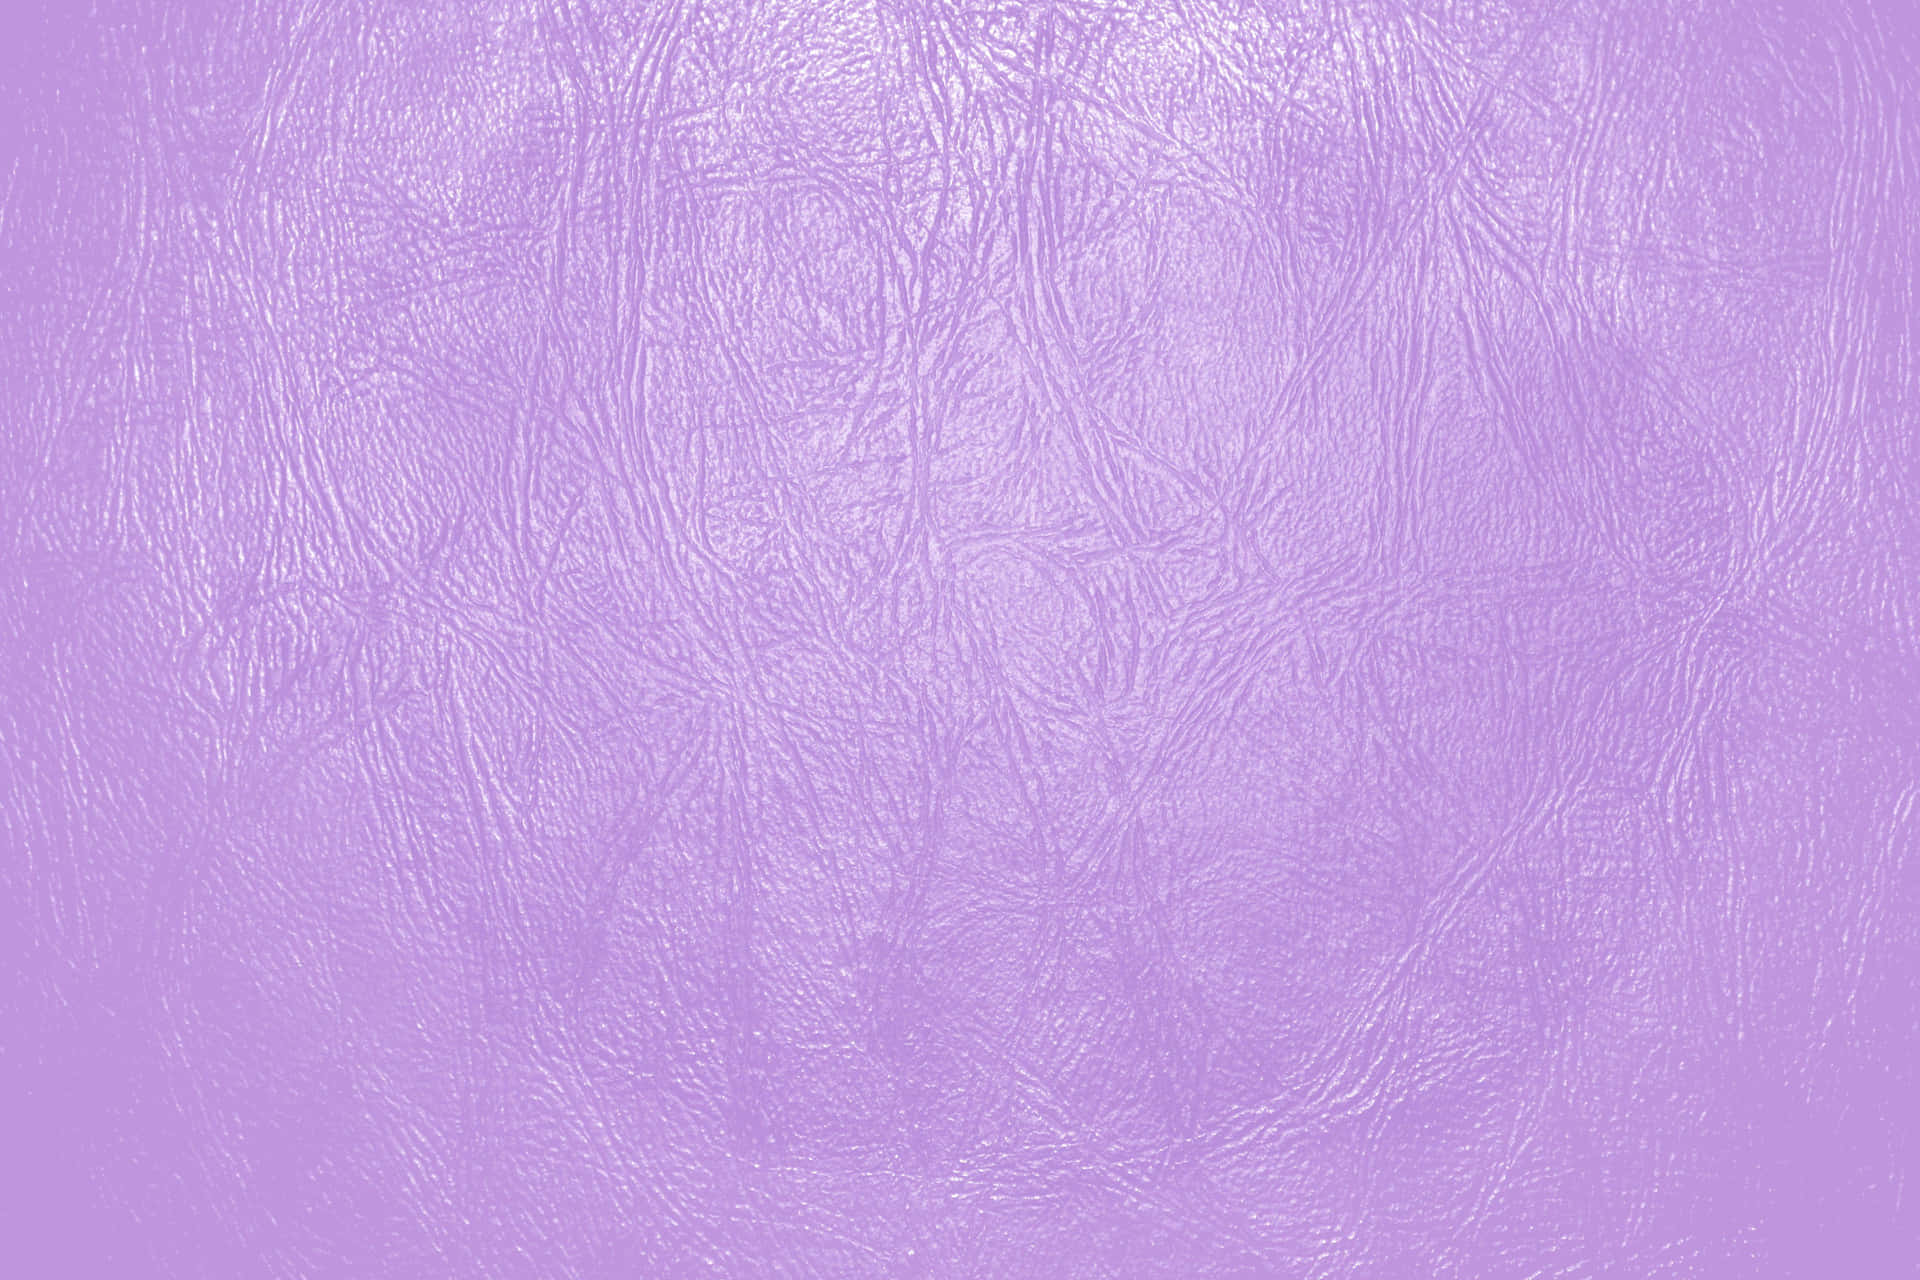 Lilabakgrundsbild (purple Background Image)